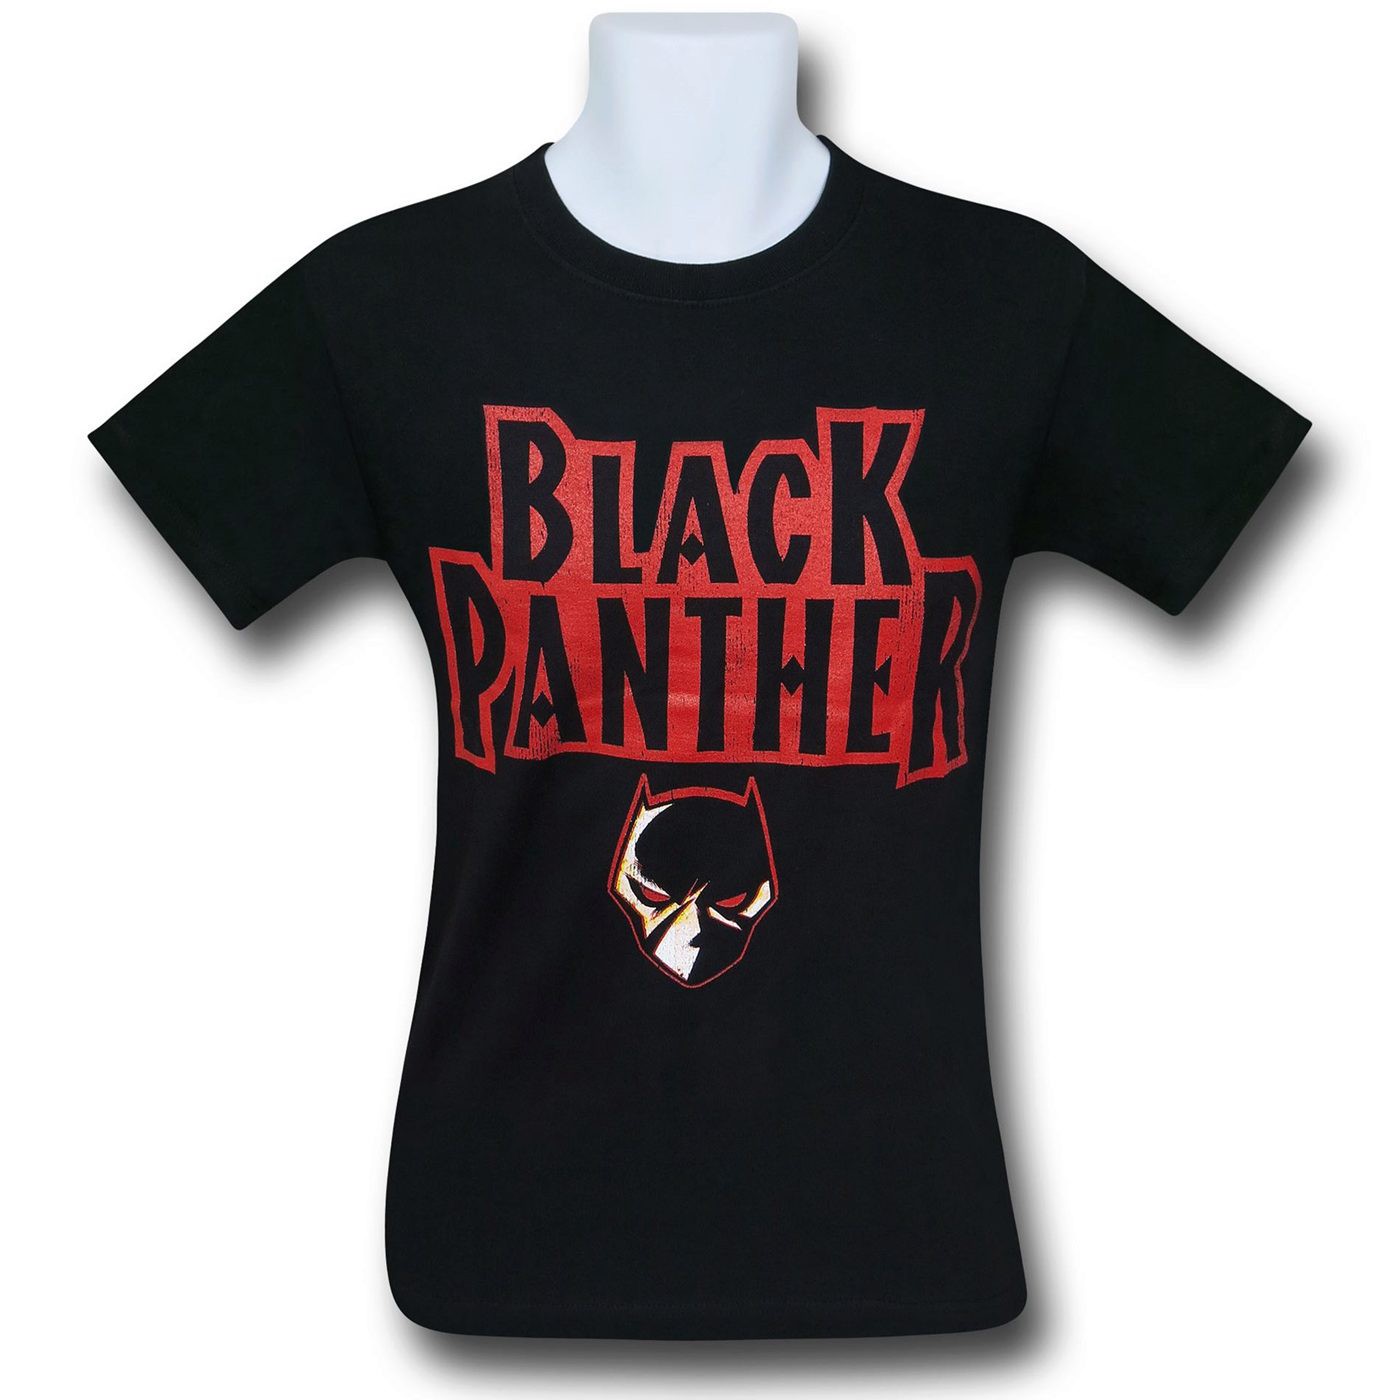 Black Panther Logo Black T-Shirt